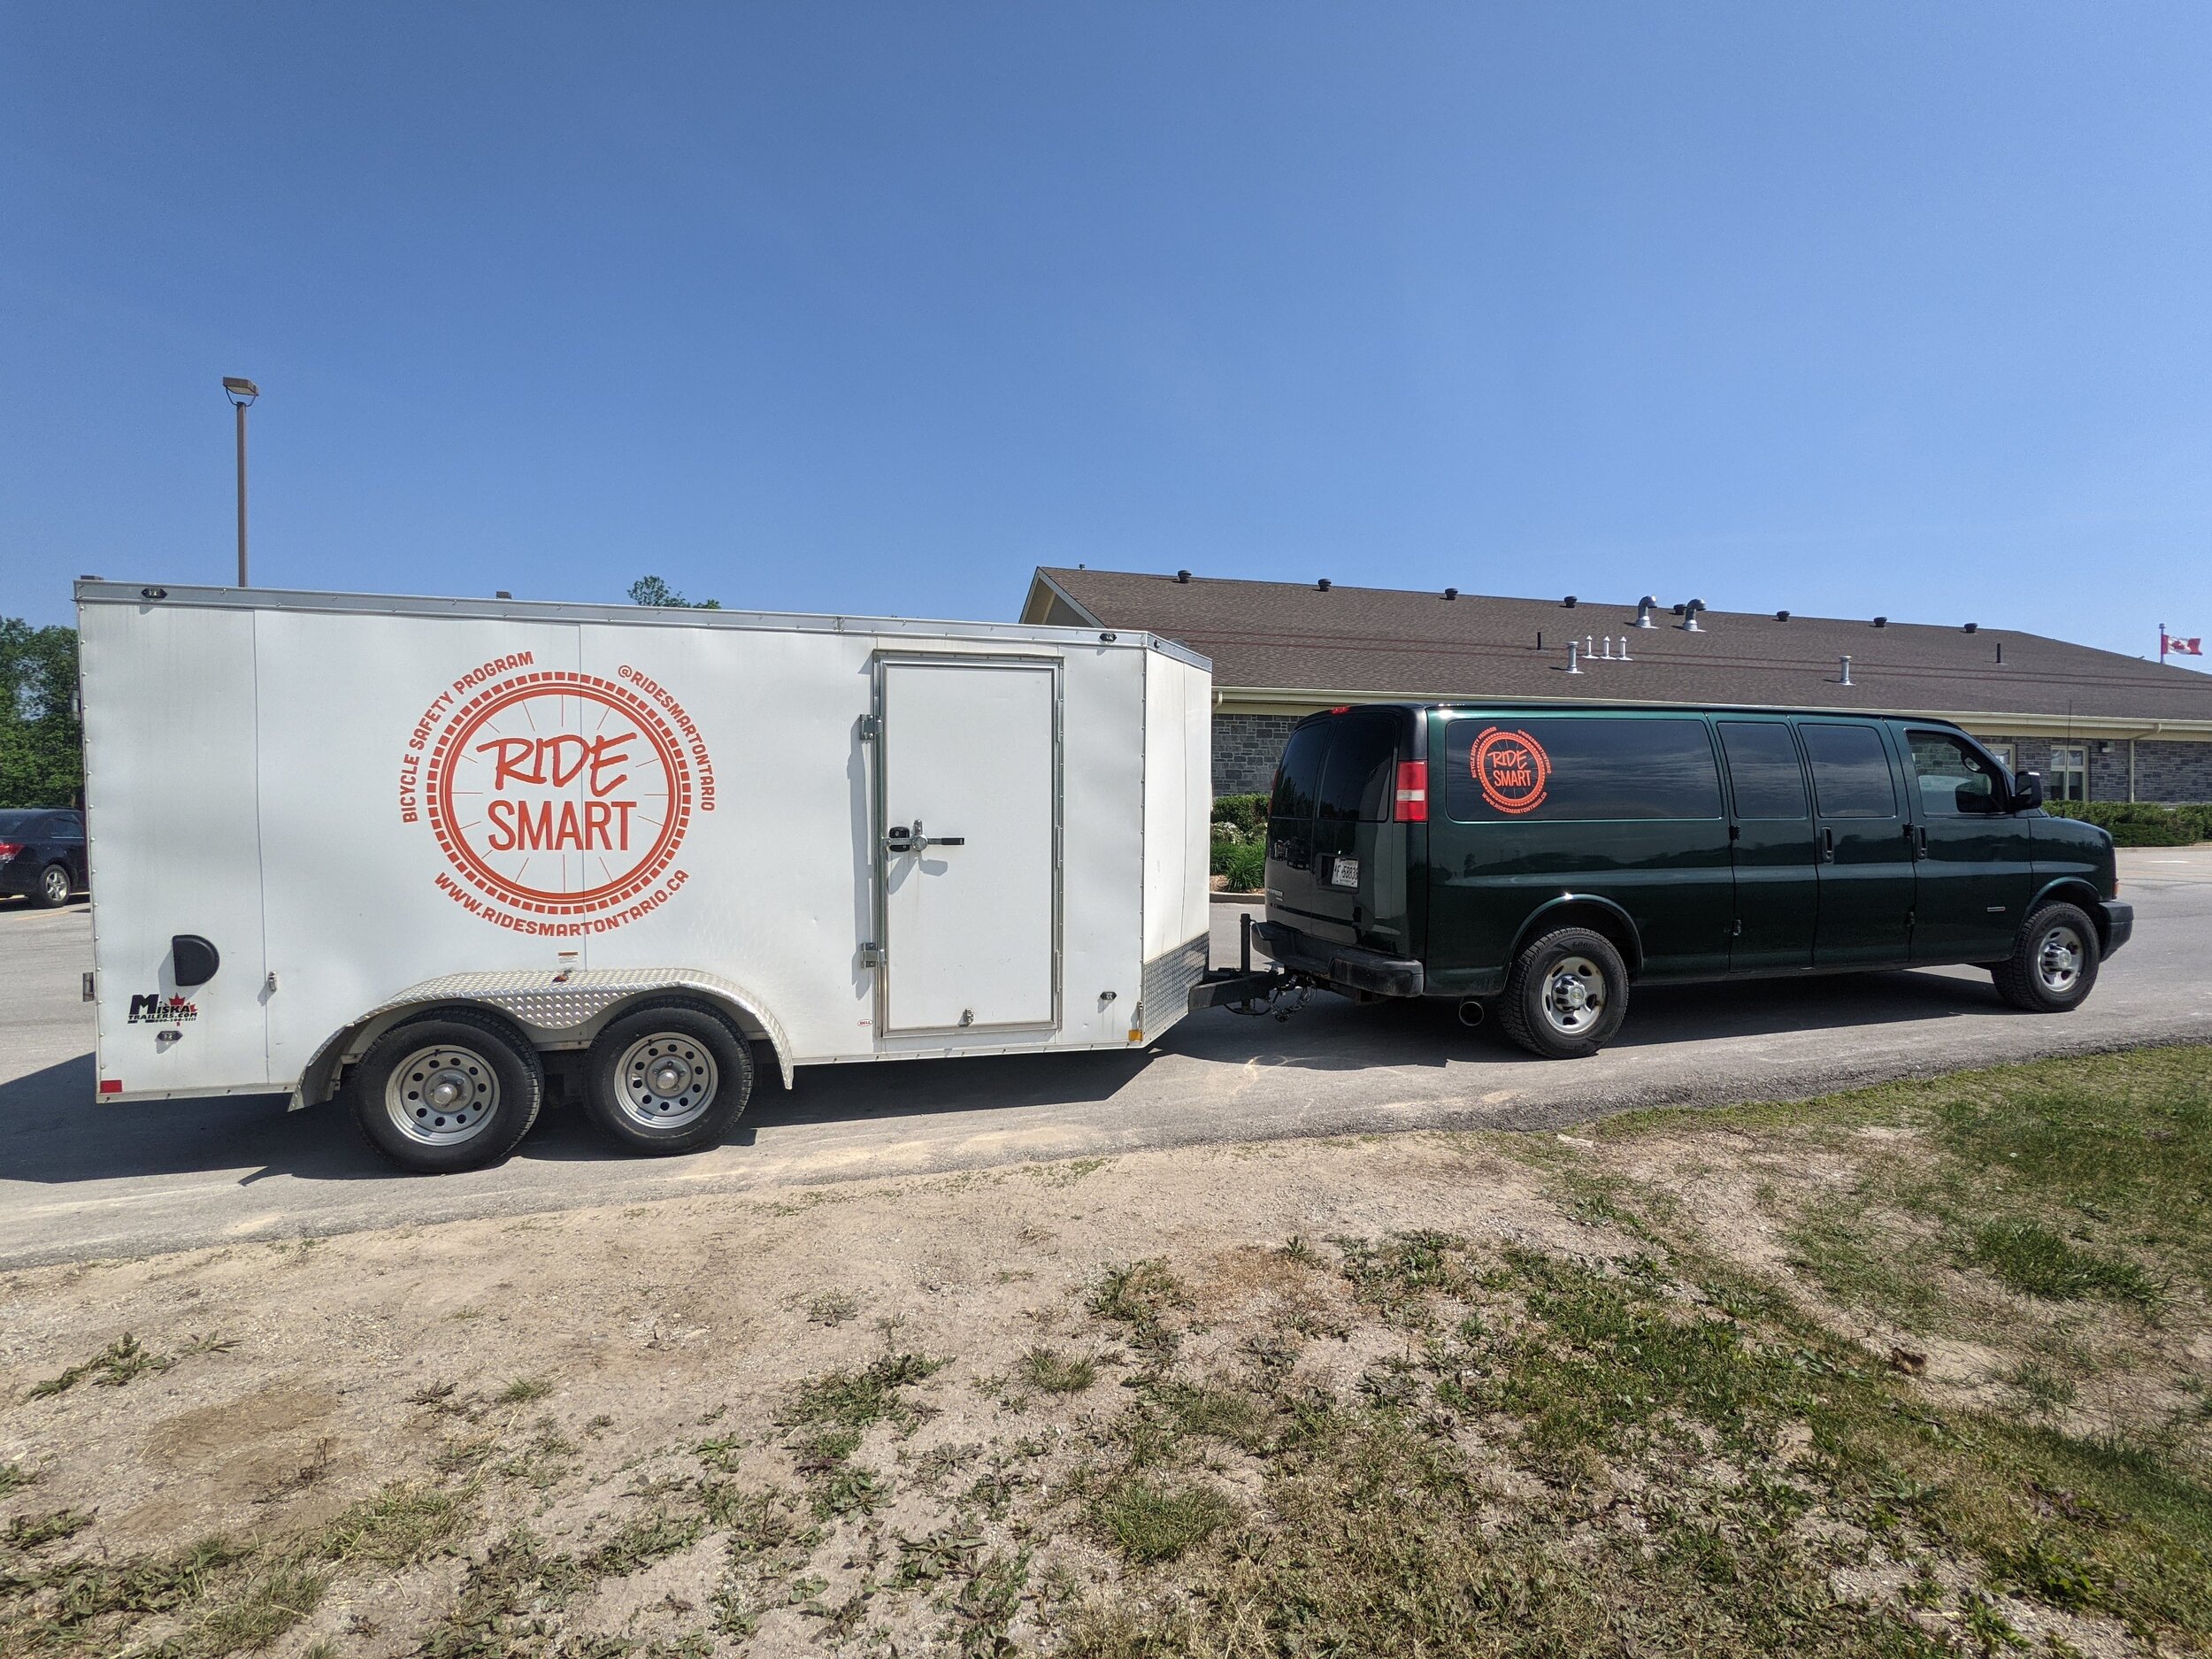 Ride Smart trailer and van freshly branded